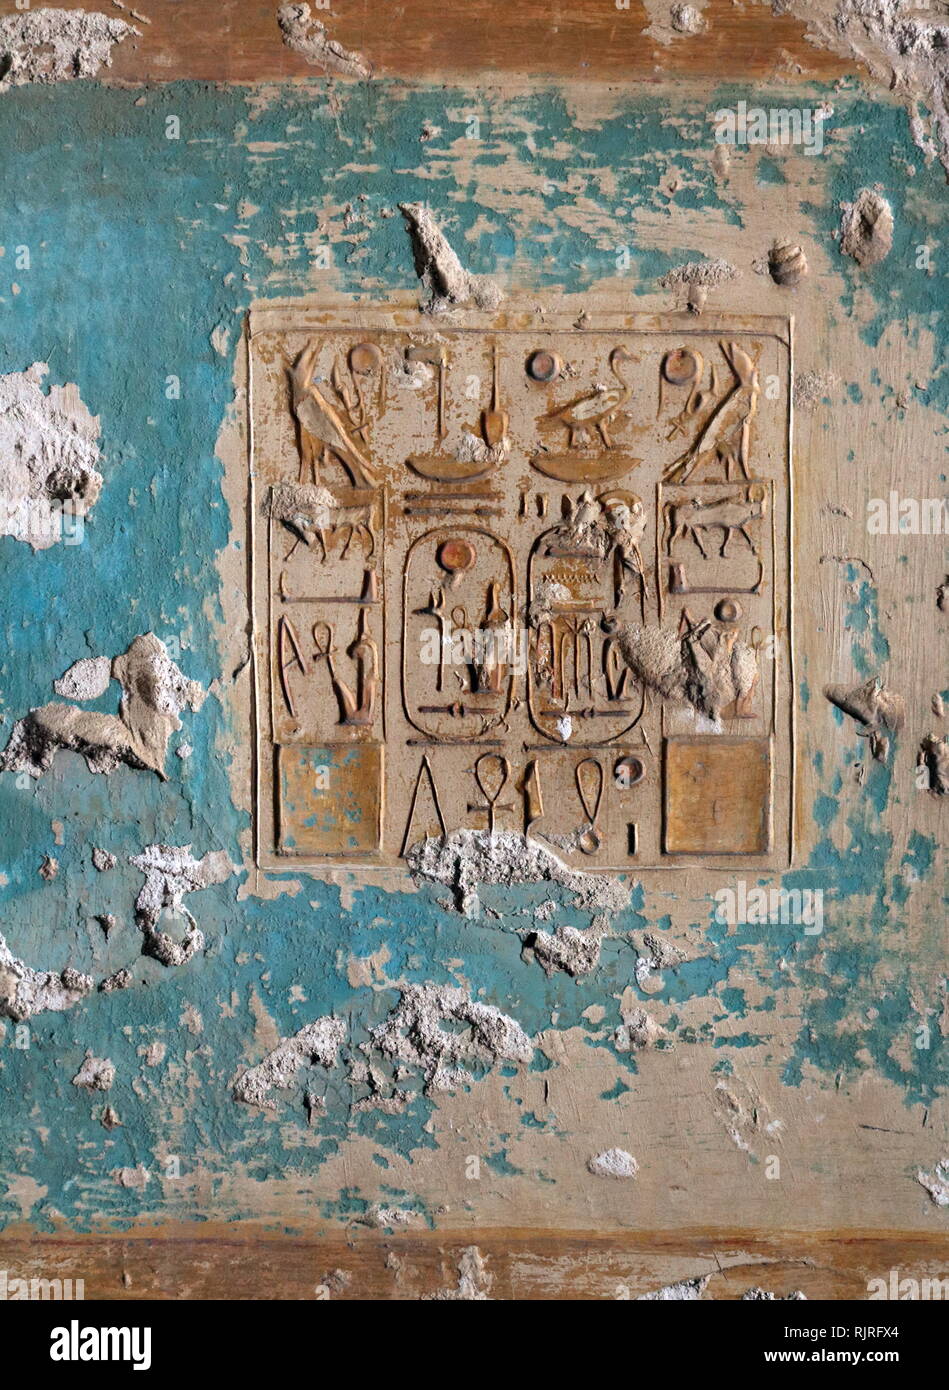 Abydos, una de las ciudades más antiguas del antiguo Egipto; textos jeroglíficos Foto de stock